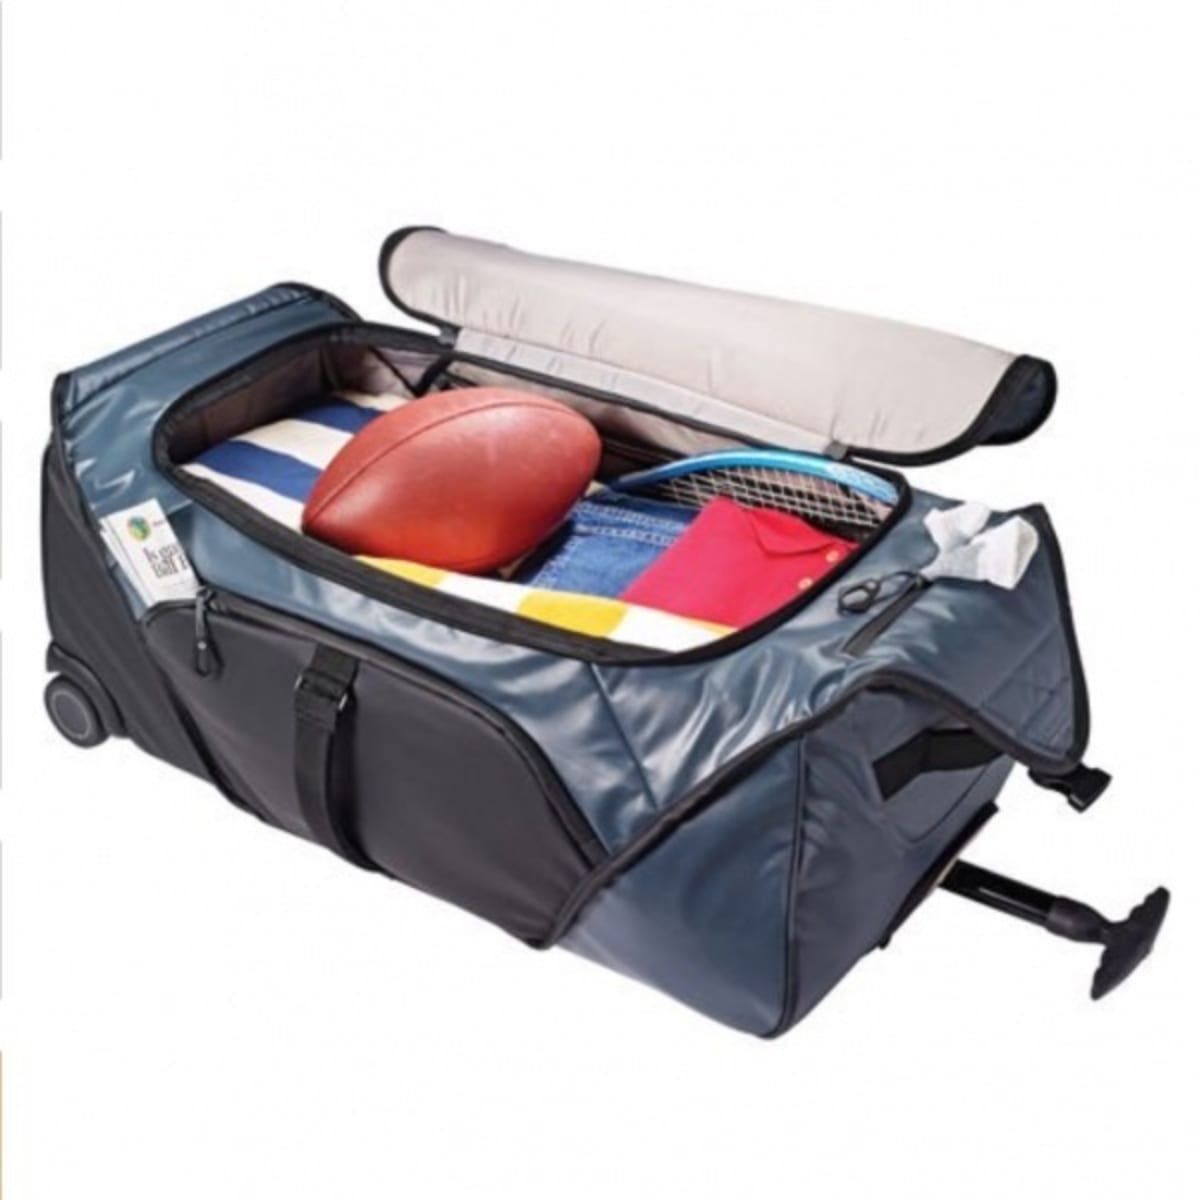 Samsonite Carry on travel bag 143336 / KJ3012 - best prices